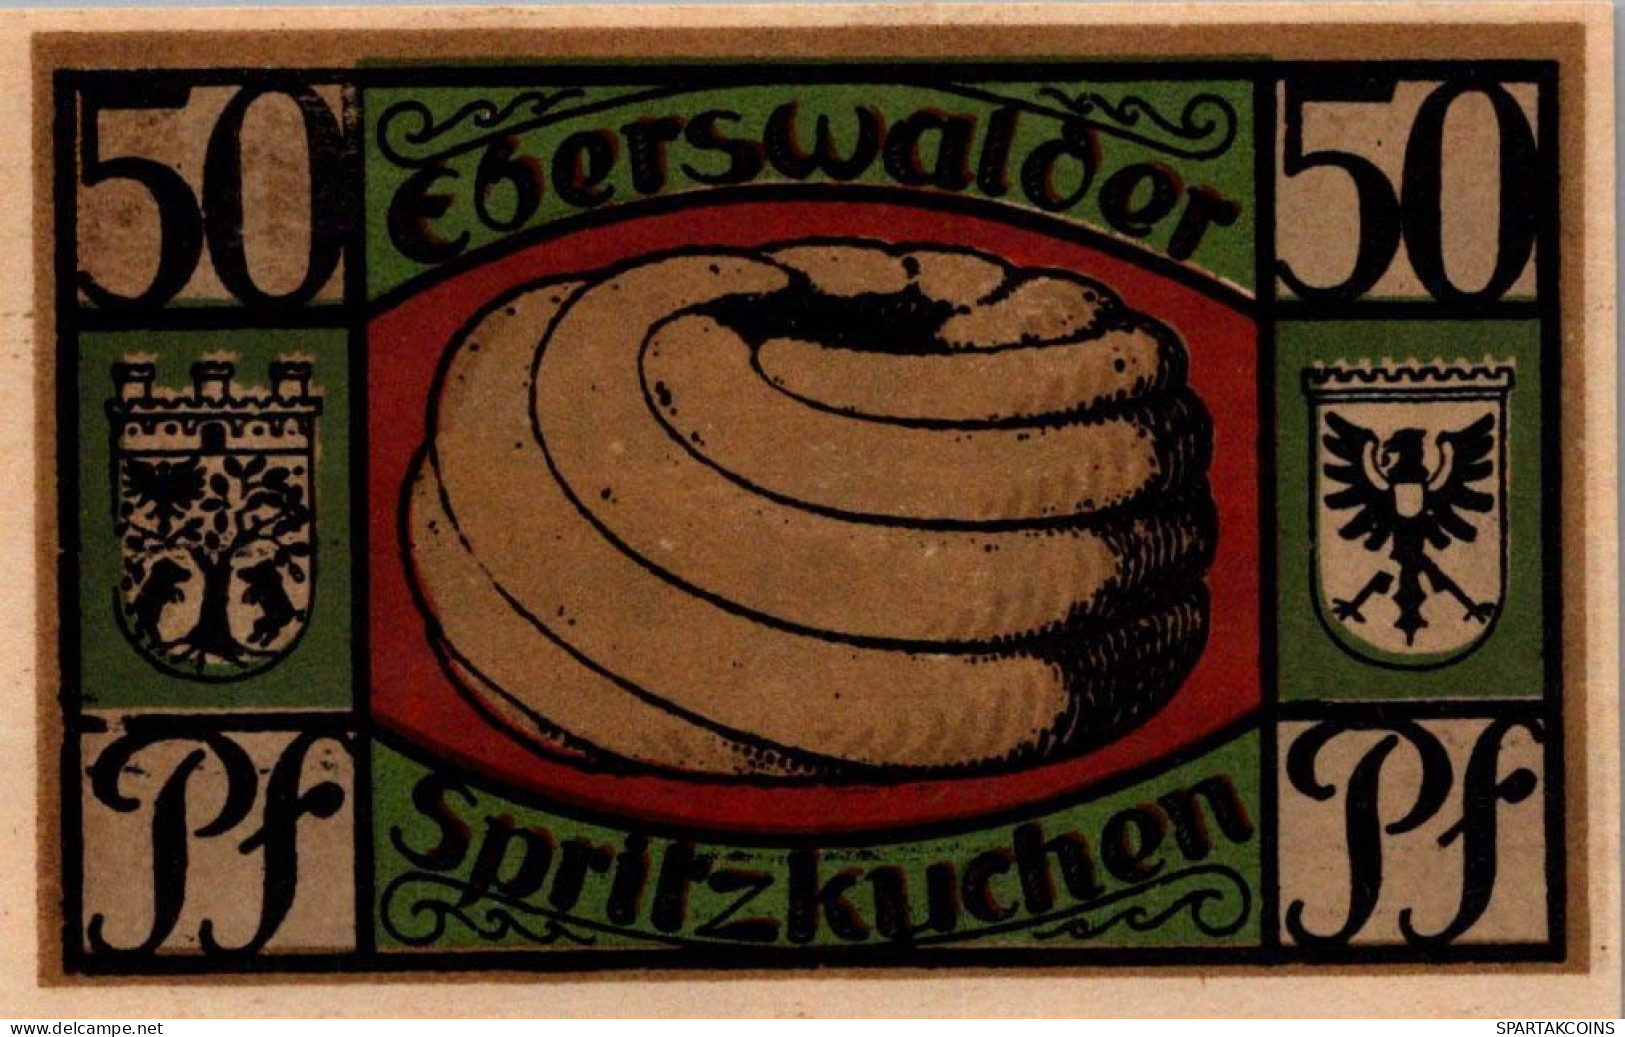 50 PFENNIG 1921 Stadt EBERSWALDE Brandenburg UNC DEUTSCHLAND Notgeld #PB019.V - [11] Local Banknote Issues